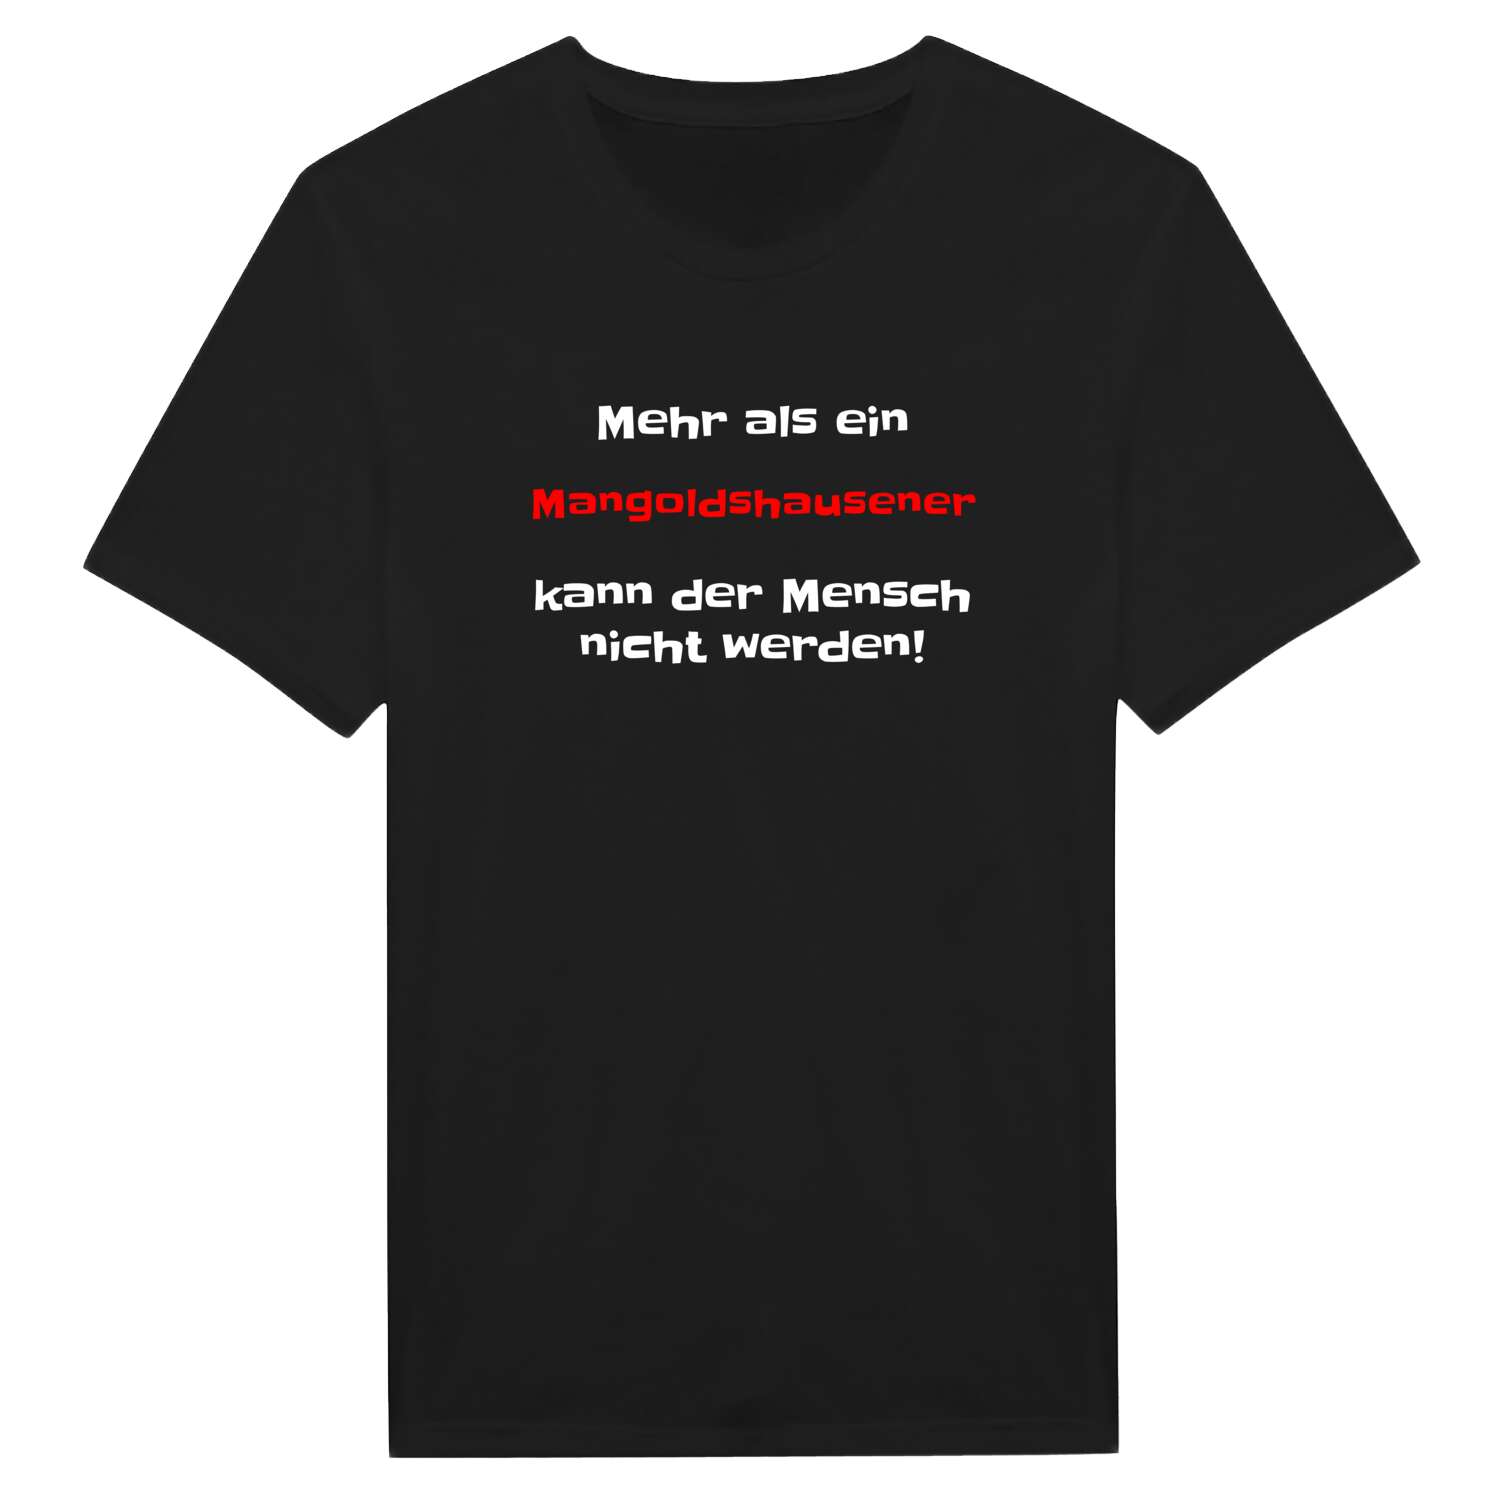 Mangoldshausen T-Shirt »Mehr als ein«